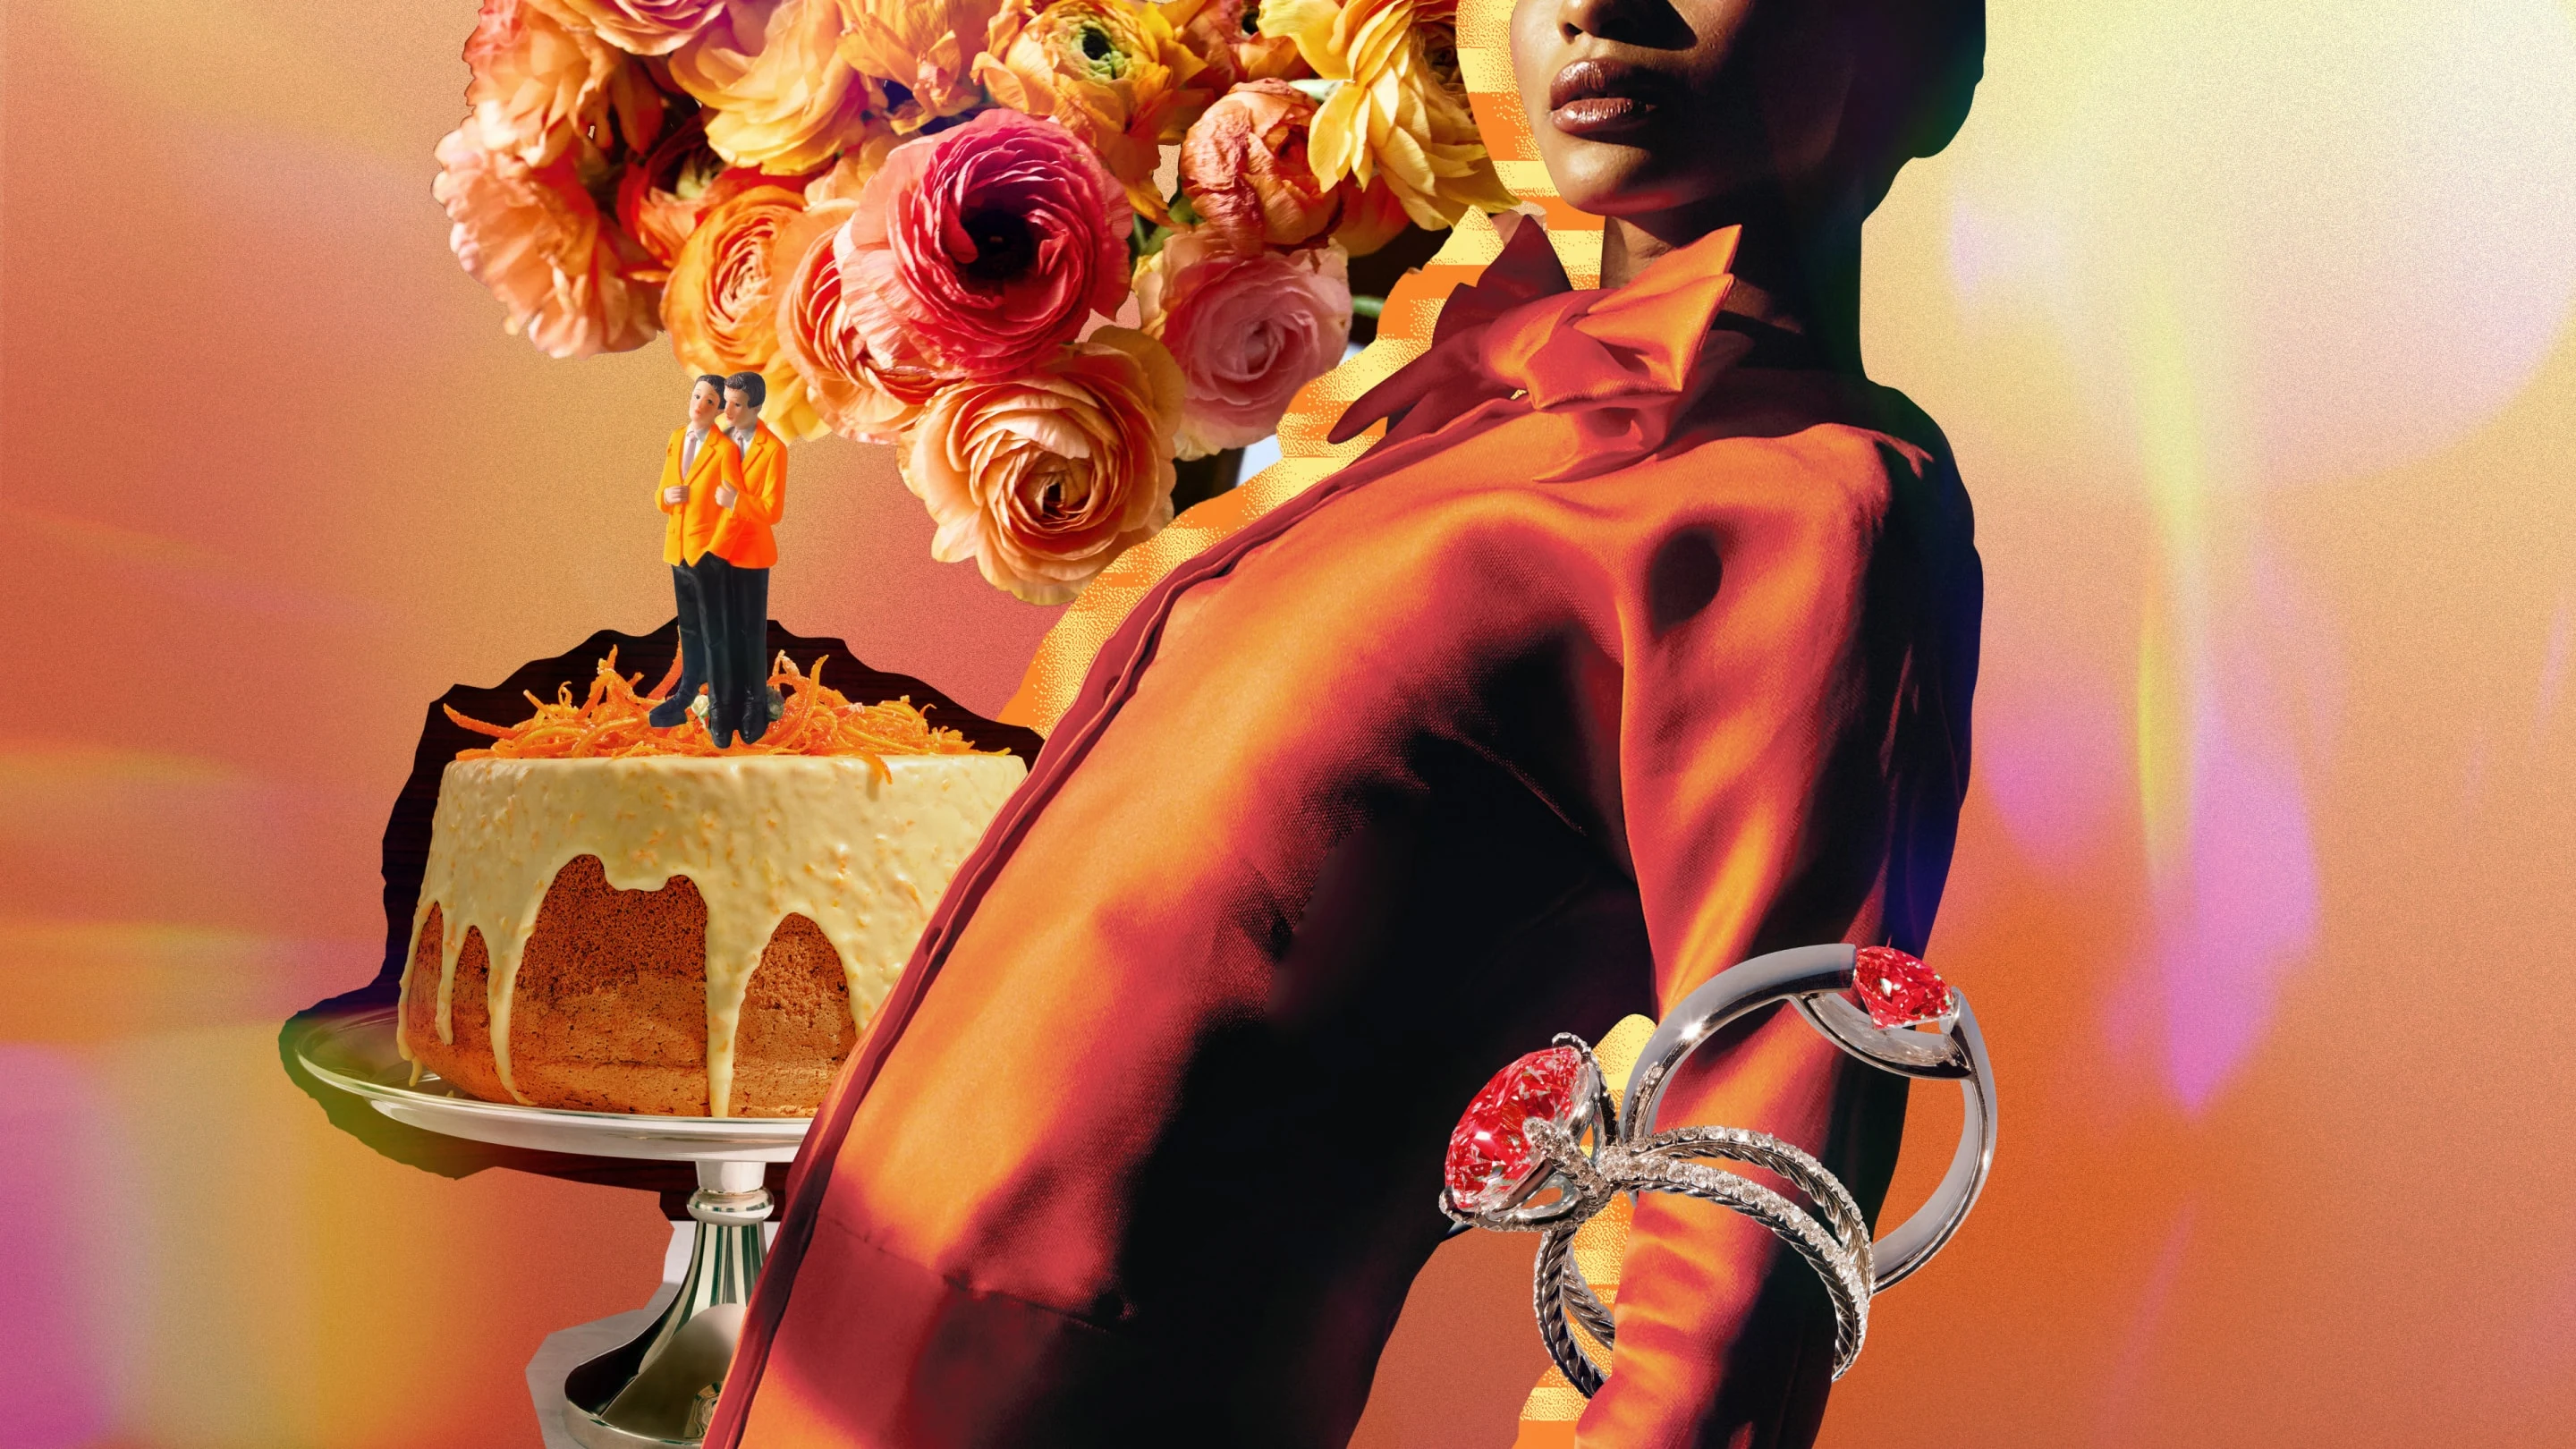 Mulher negra de camisa laranja e gravata borboleta colada com objetos relacionados a casamento (como bolo de casamento, flores e anéis).